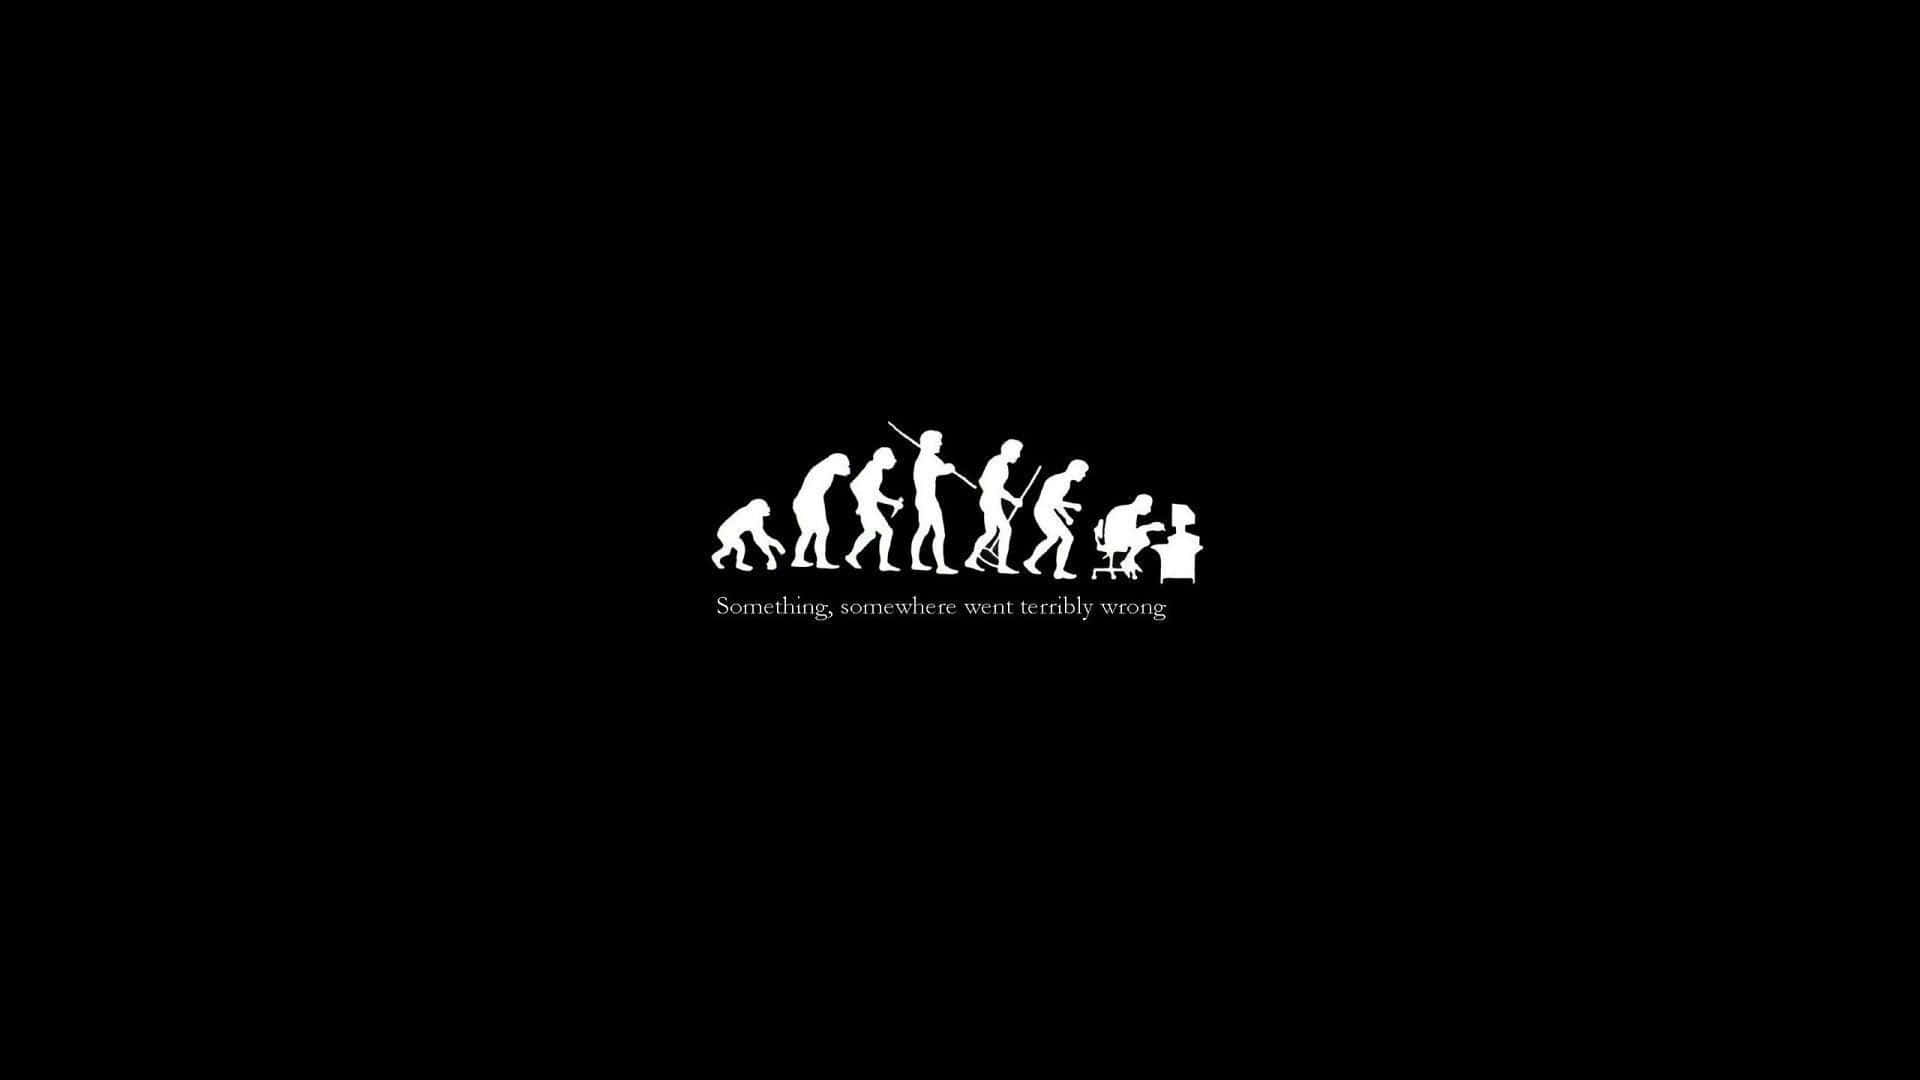 The Evolution Of Man, White, Black, Wallpaper, Person, Evolution, Evolution Of Man, Evolution Of Man, Evolution Of Man, Evolution Of Man, Evolution Wallpaper